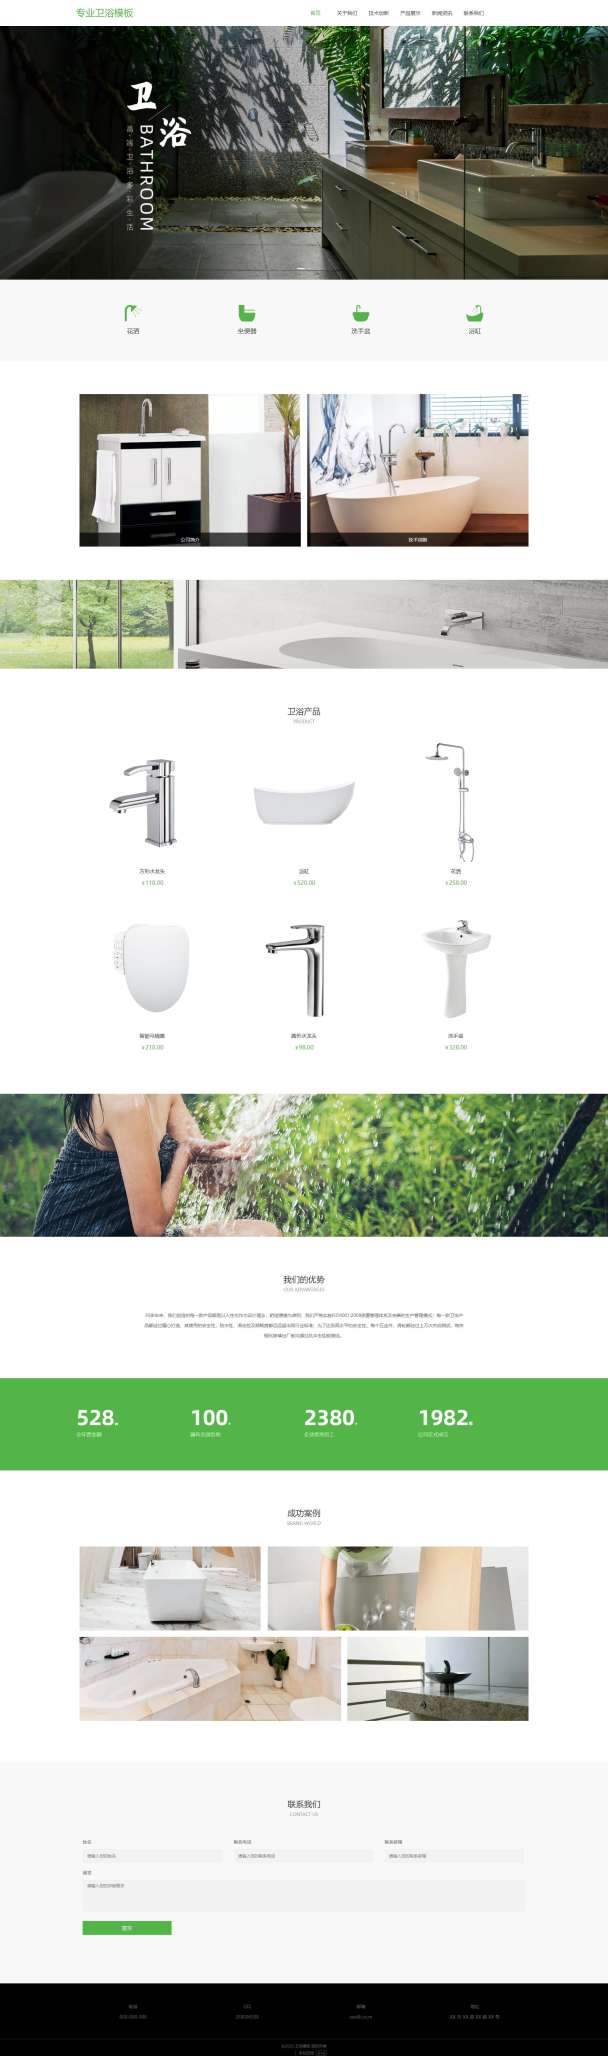 高端家居卫浴浴缸网站模板